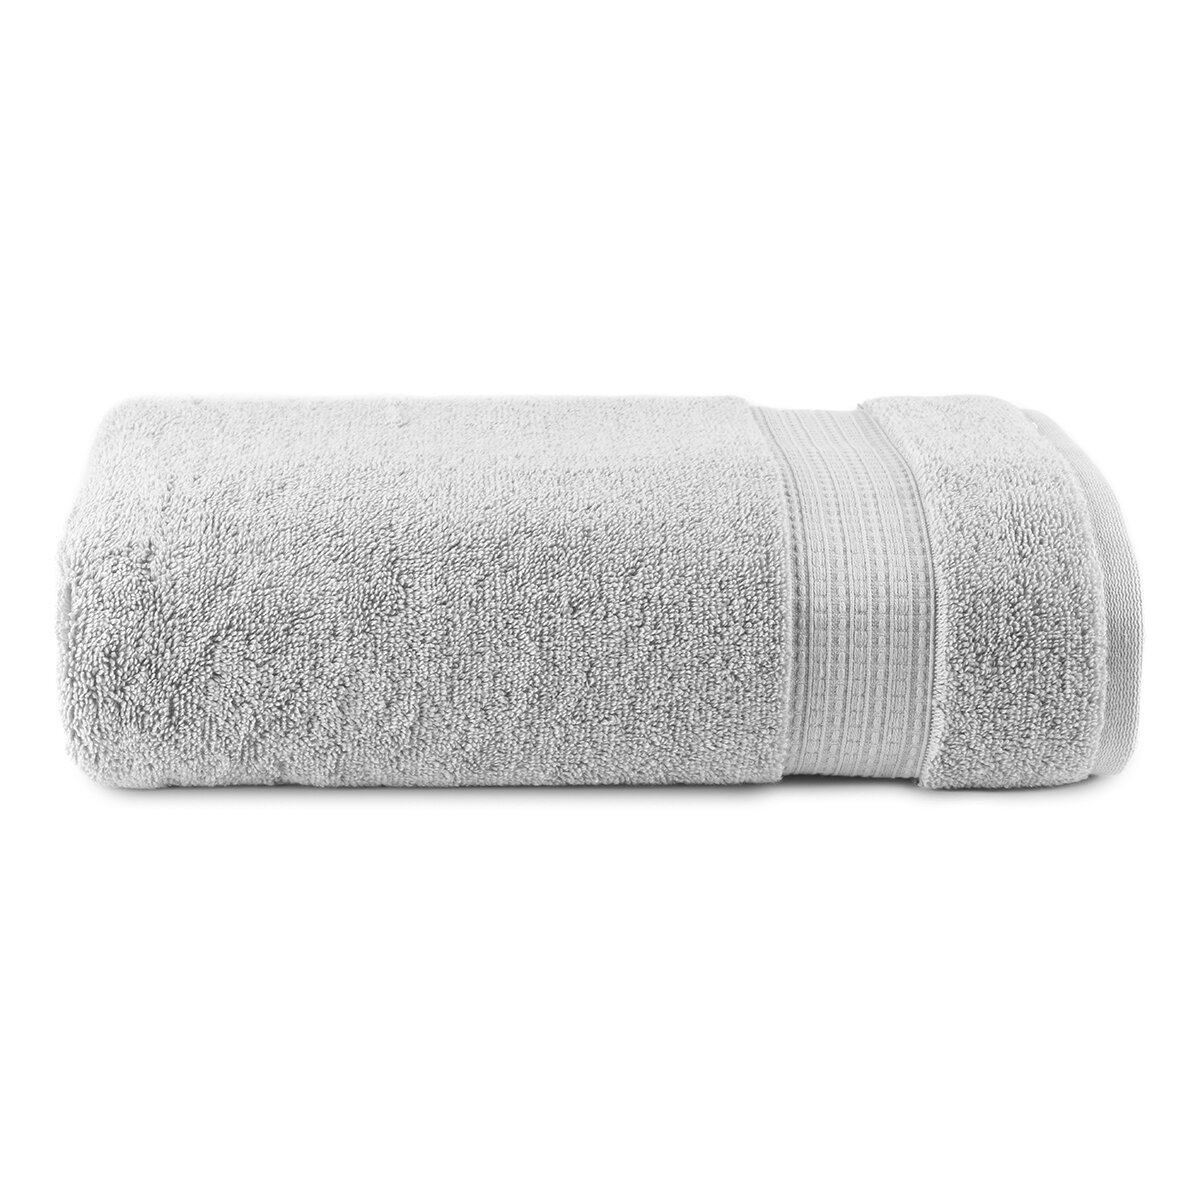 Cómo elegir toallas para el baño (más allá del precio) - La Tercera